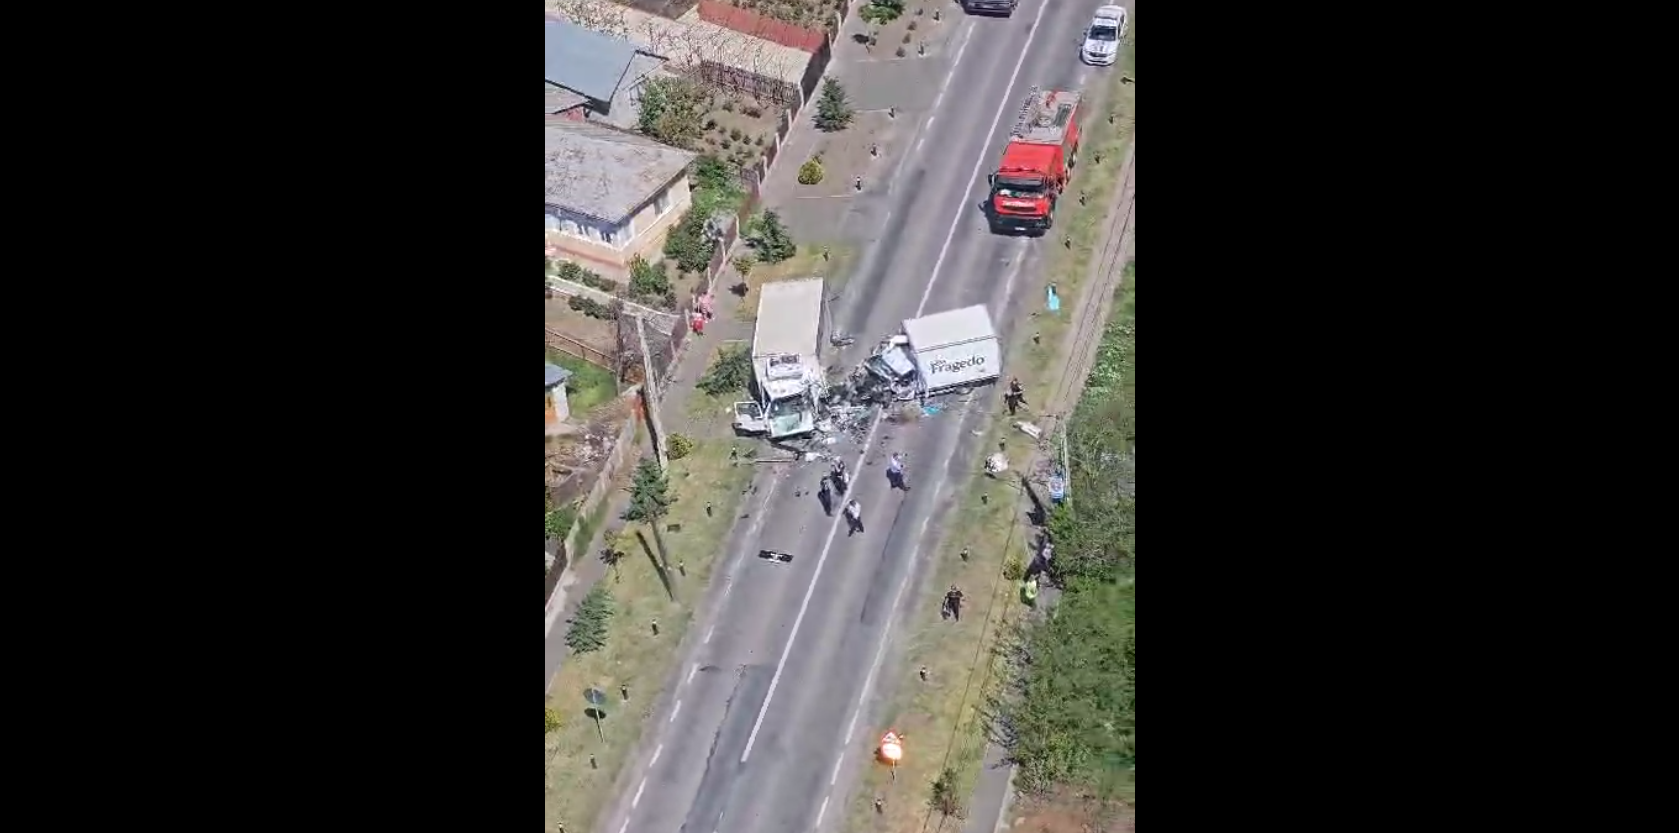 VIDEO: Grav accident la Surdila-Greci, cu 2 victime încarcerate, inconştiente. Intervine elicopterul SMURD Galaţi (UPDATE)